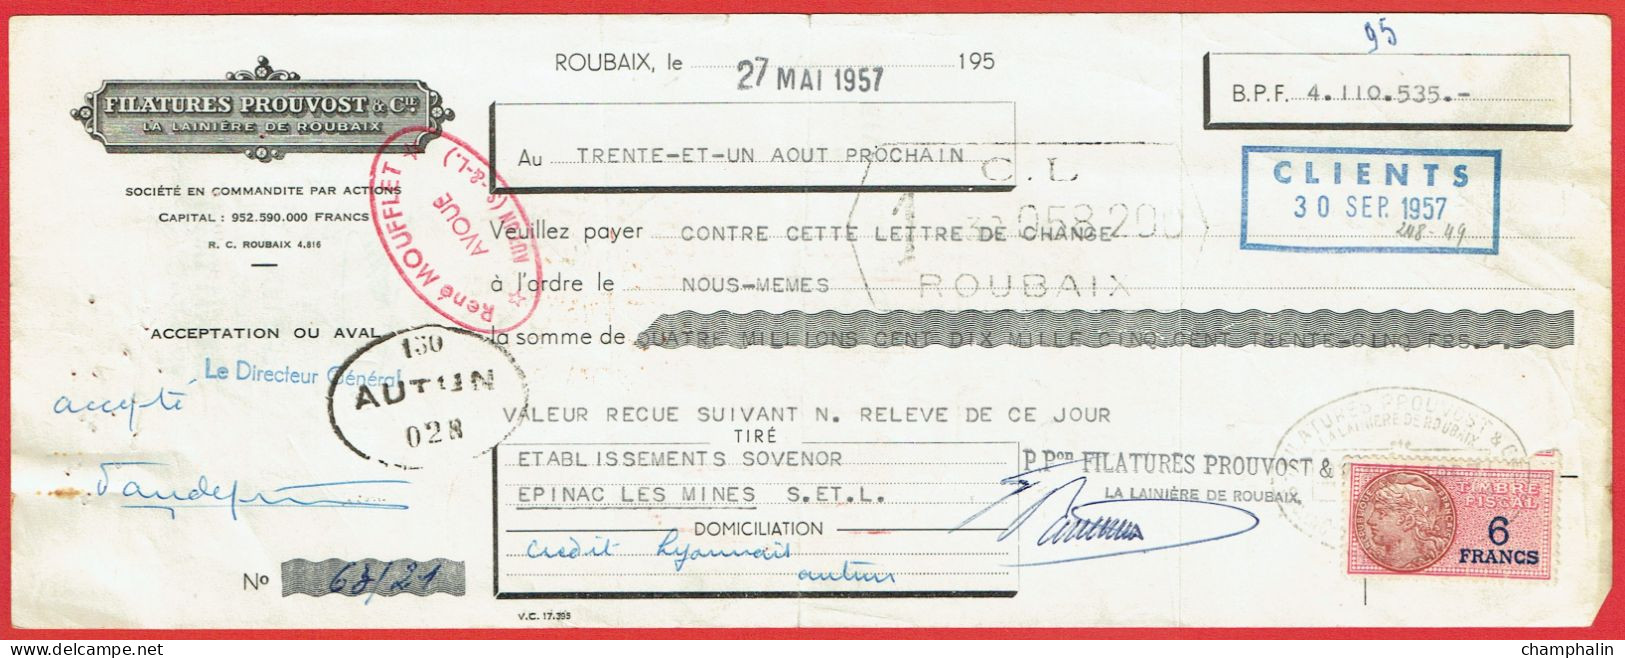 Lot 8 Lettres De Change De Roubaix (59) Pour Epinac-les-Mines (71) - 1957 - Timbre TF N°439-440 - Filatures Prouvost - Bills Of Exchange